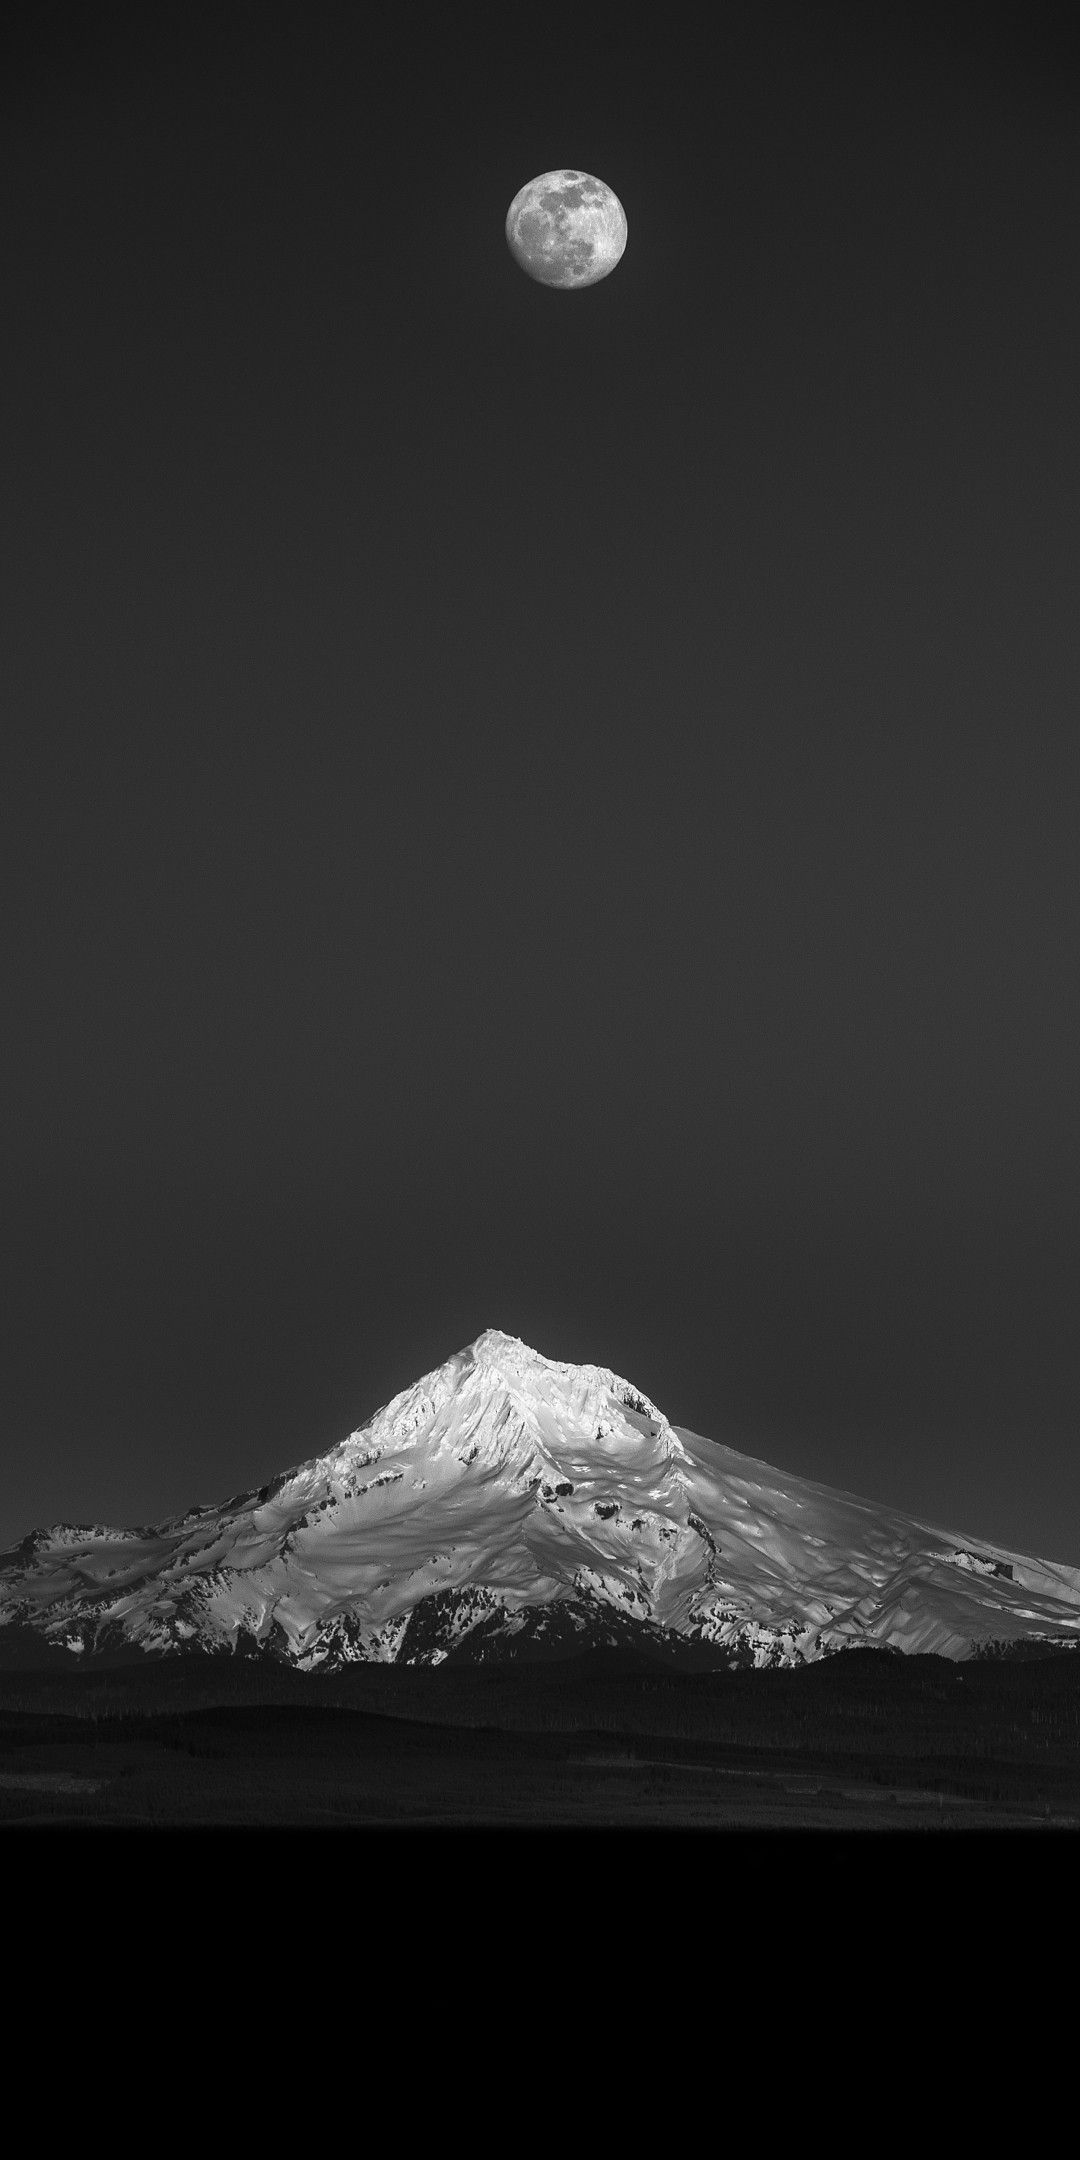 foto de fondo de pantalla,cielo,luna,en blanco y negro,atmósfera,fotografía monocroma